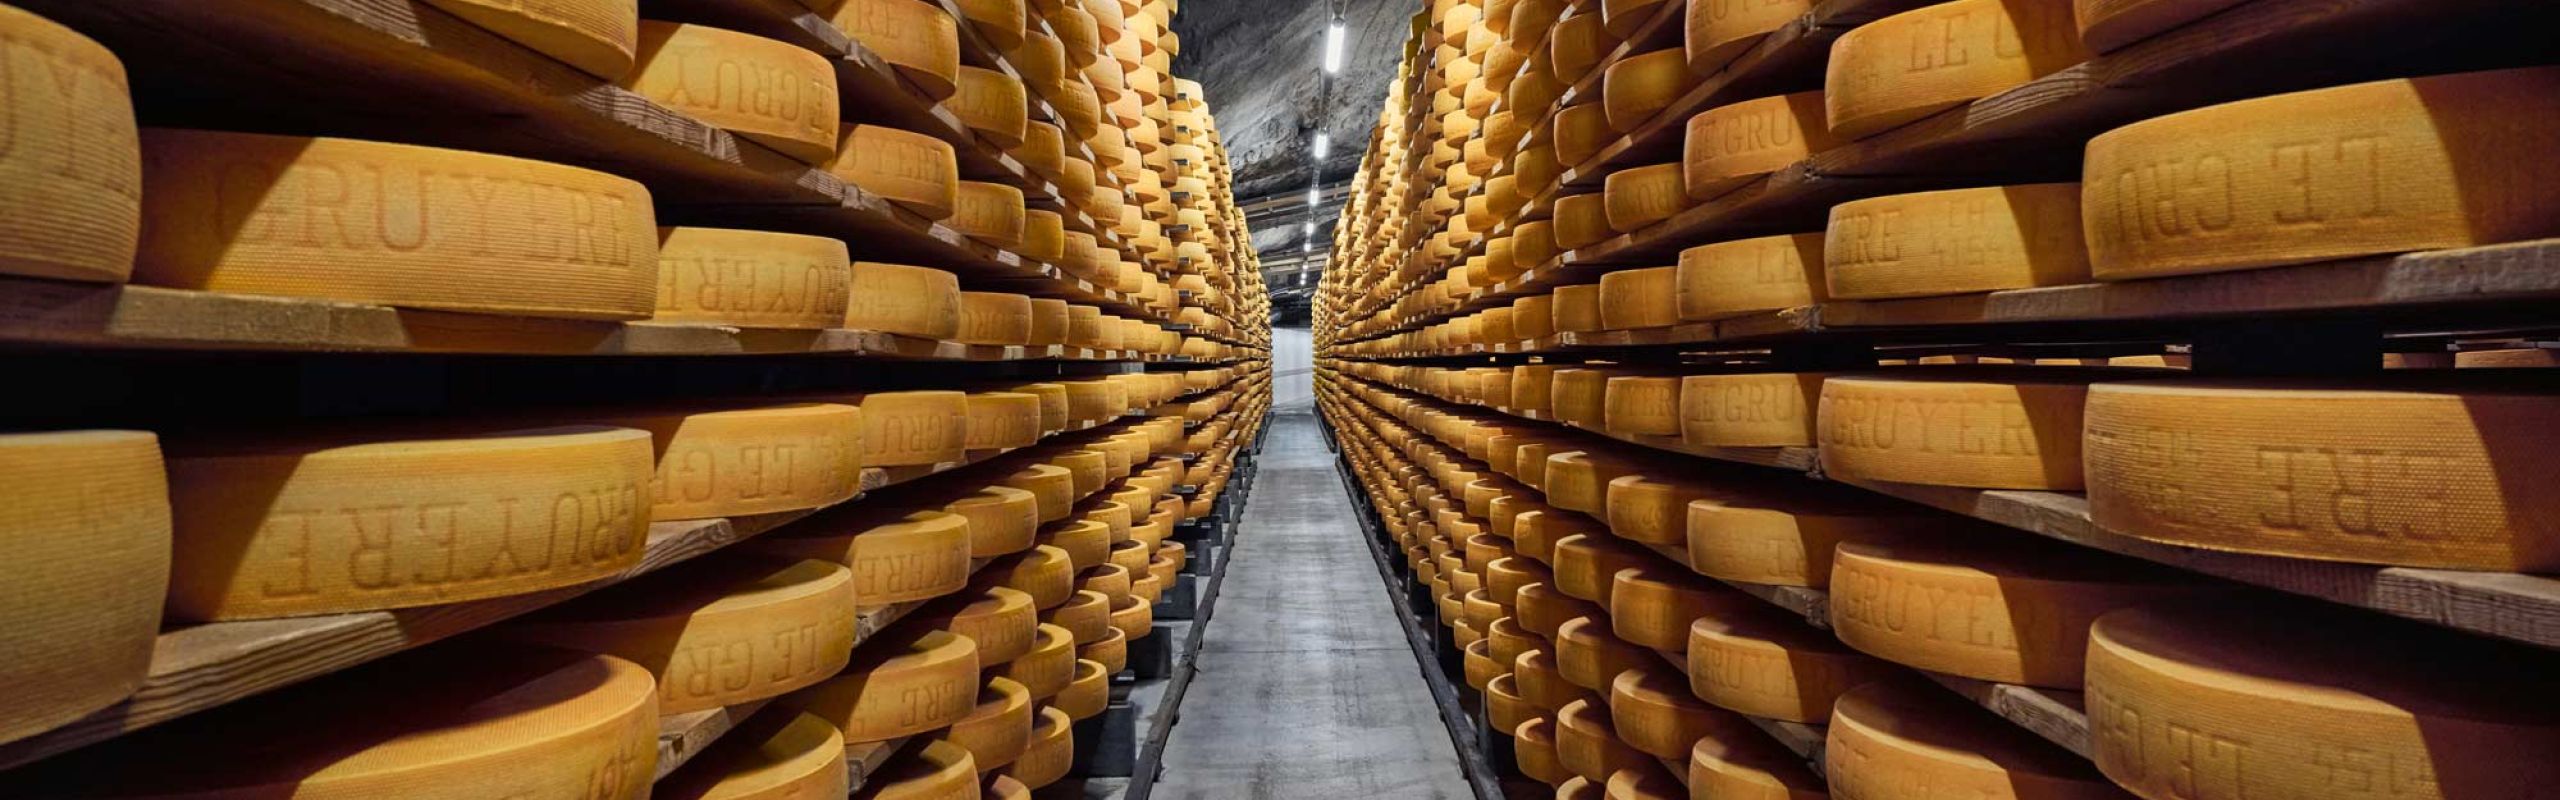 Voyage culinaire – Le fromage de Gruyère - Affinage